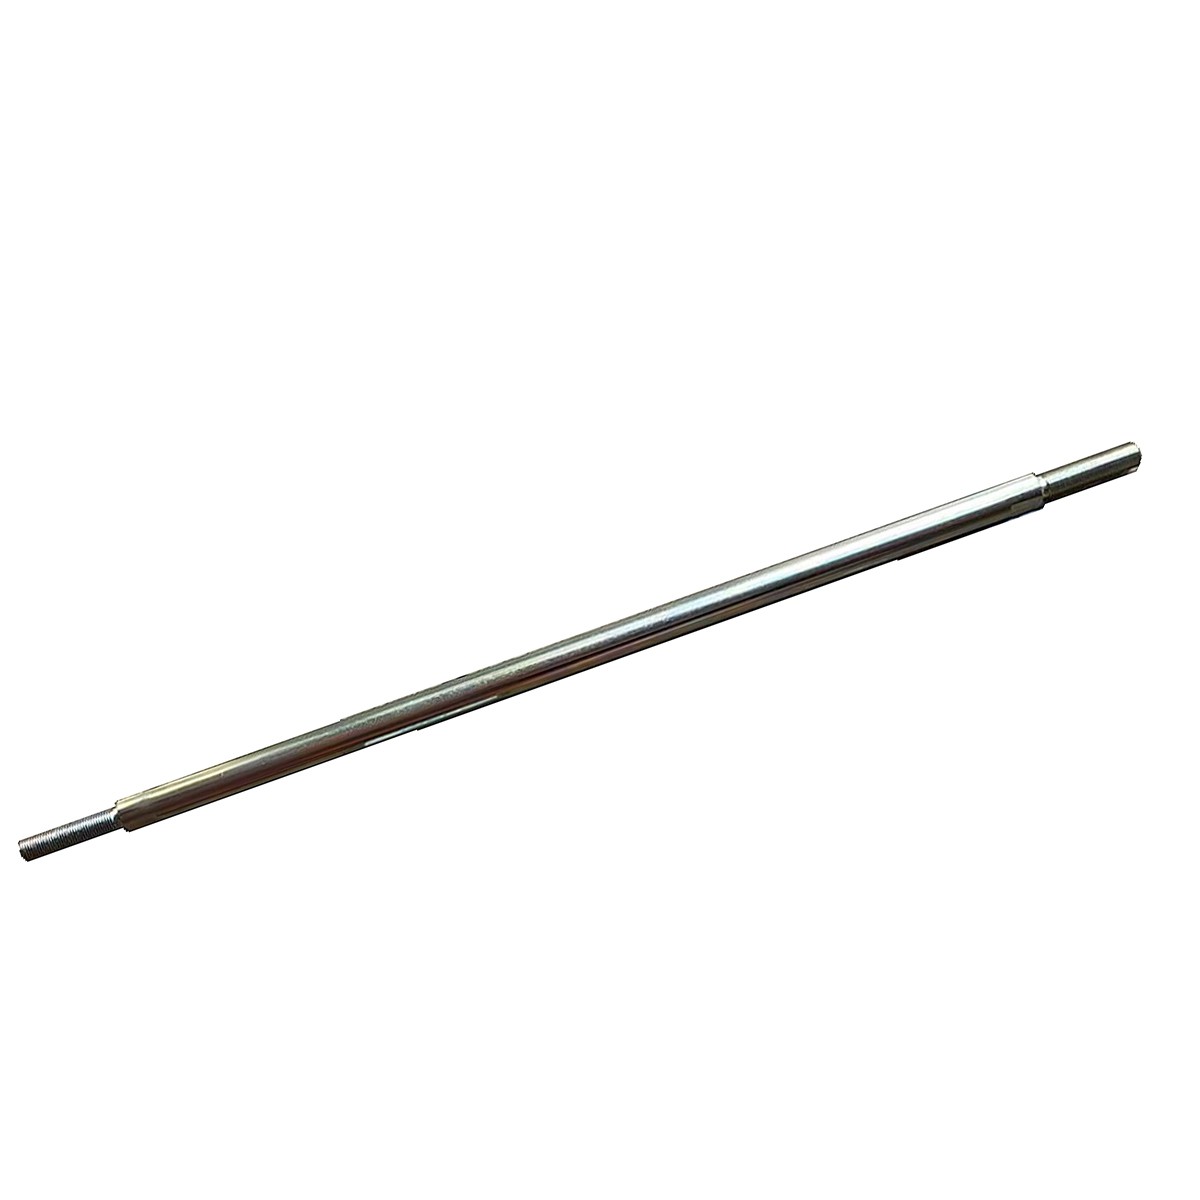 Tie rod / 535 mm / Iseki SXG19/SXG323/SXG326/SXG327 / 1728-436-001-00